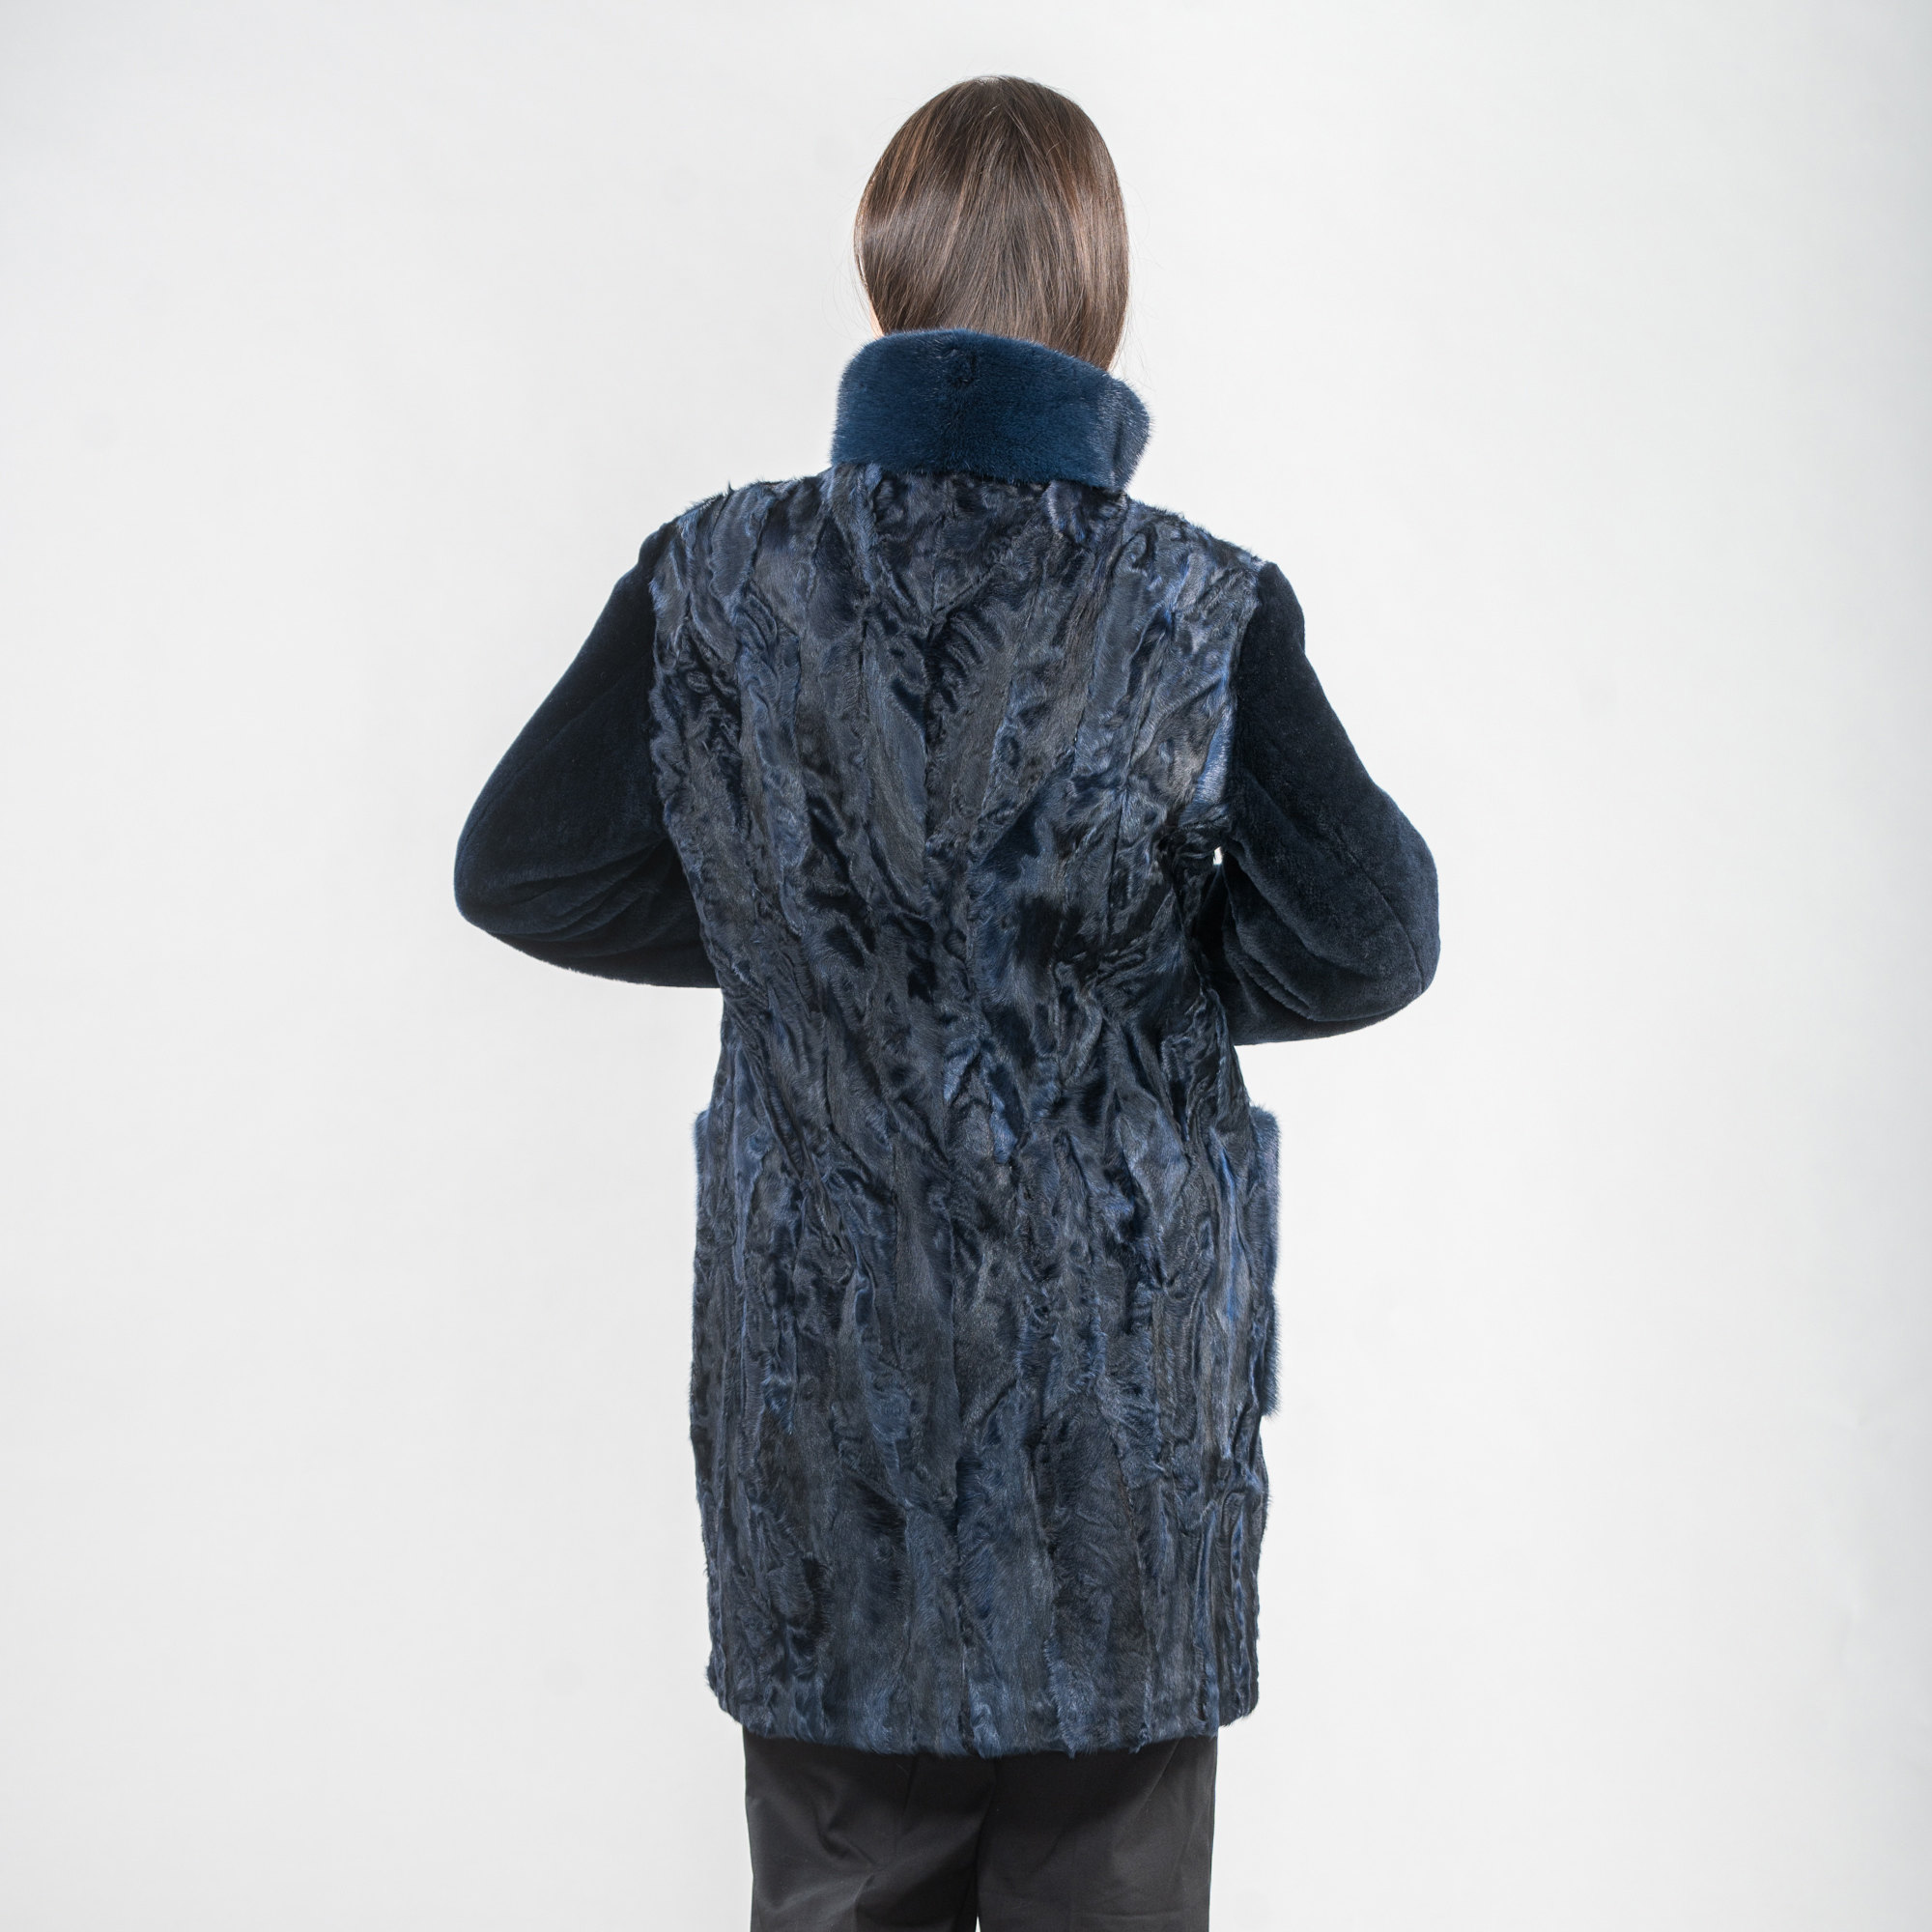 Blue Astrakhan fur coat with mink fur details